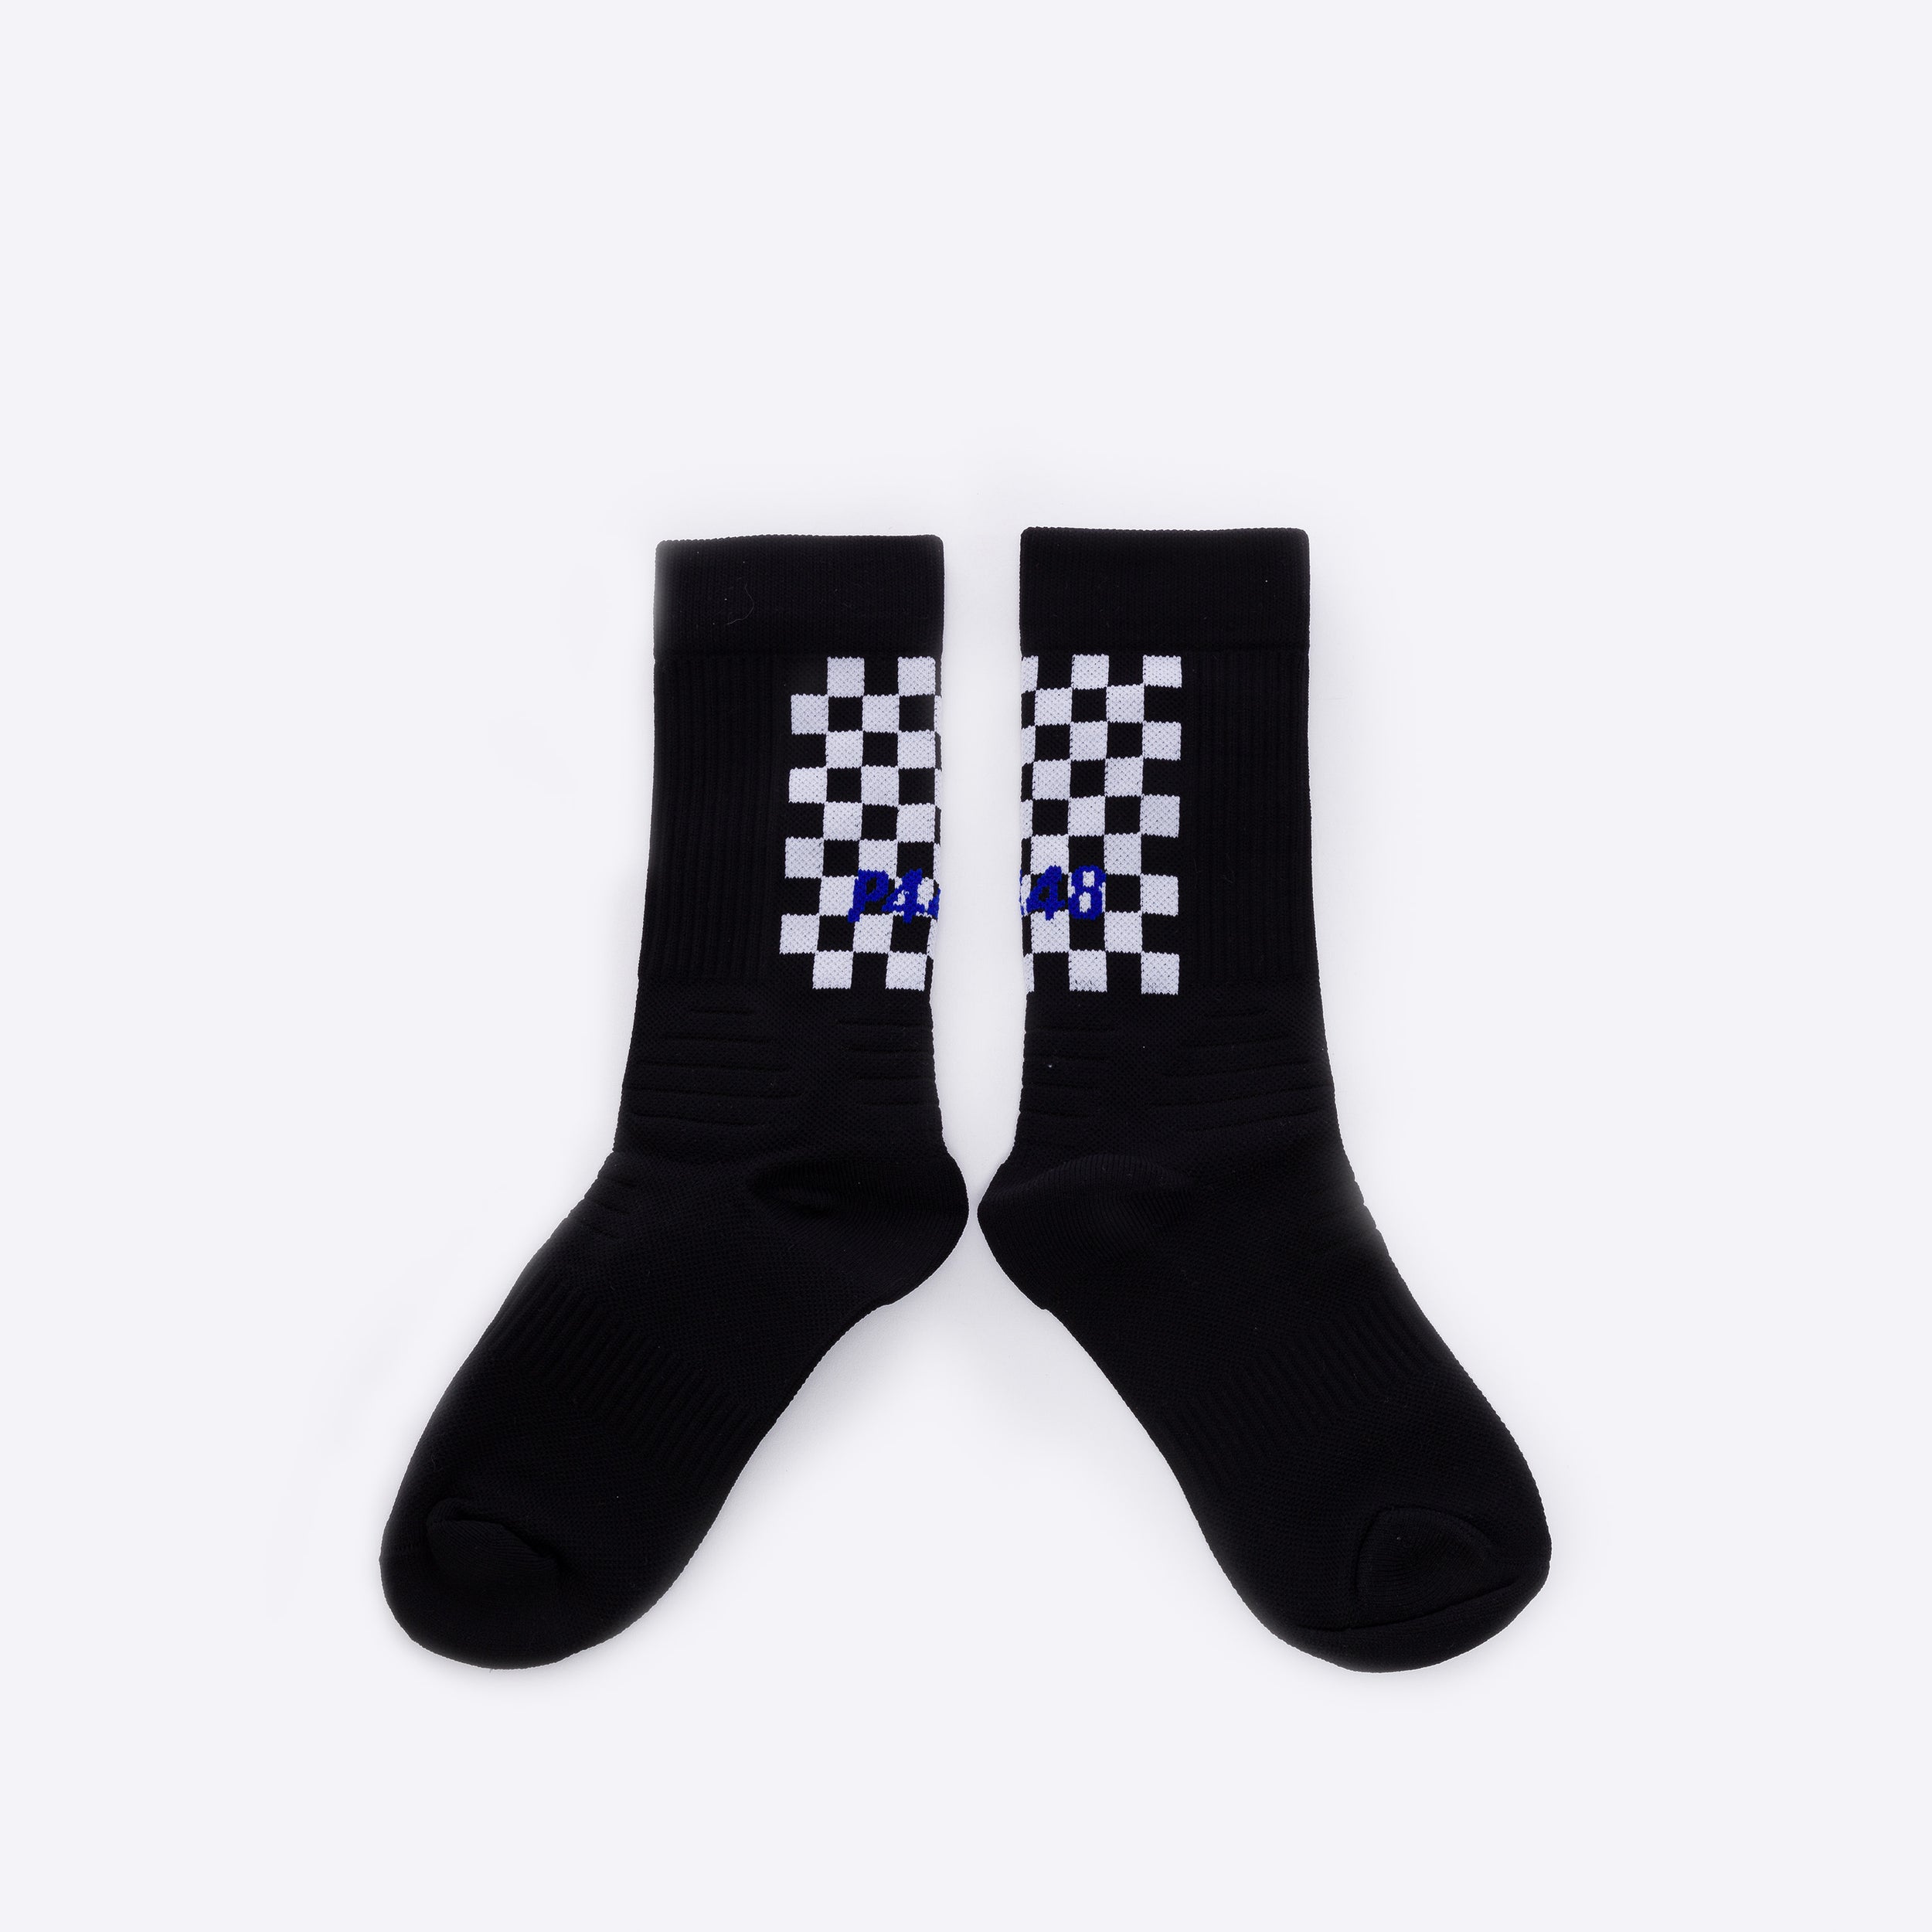 Socks Black/Check